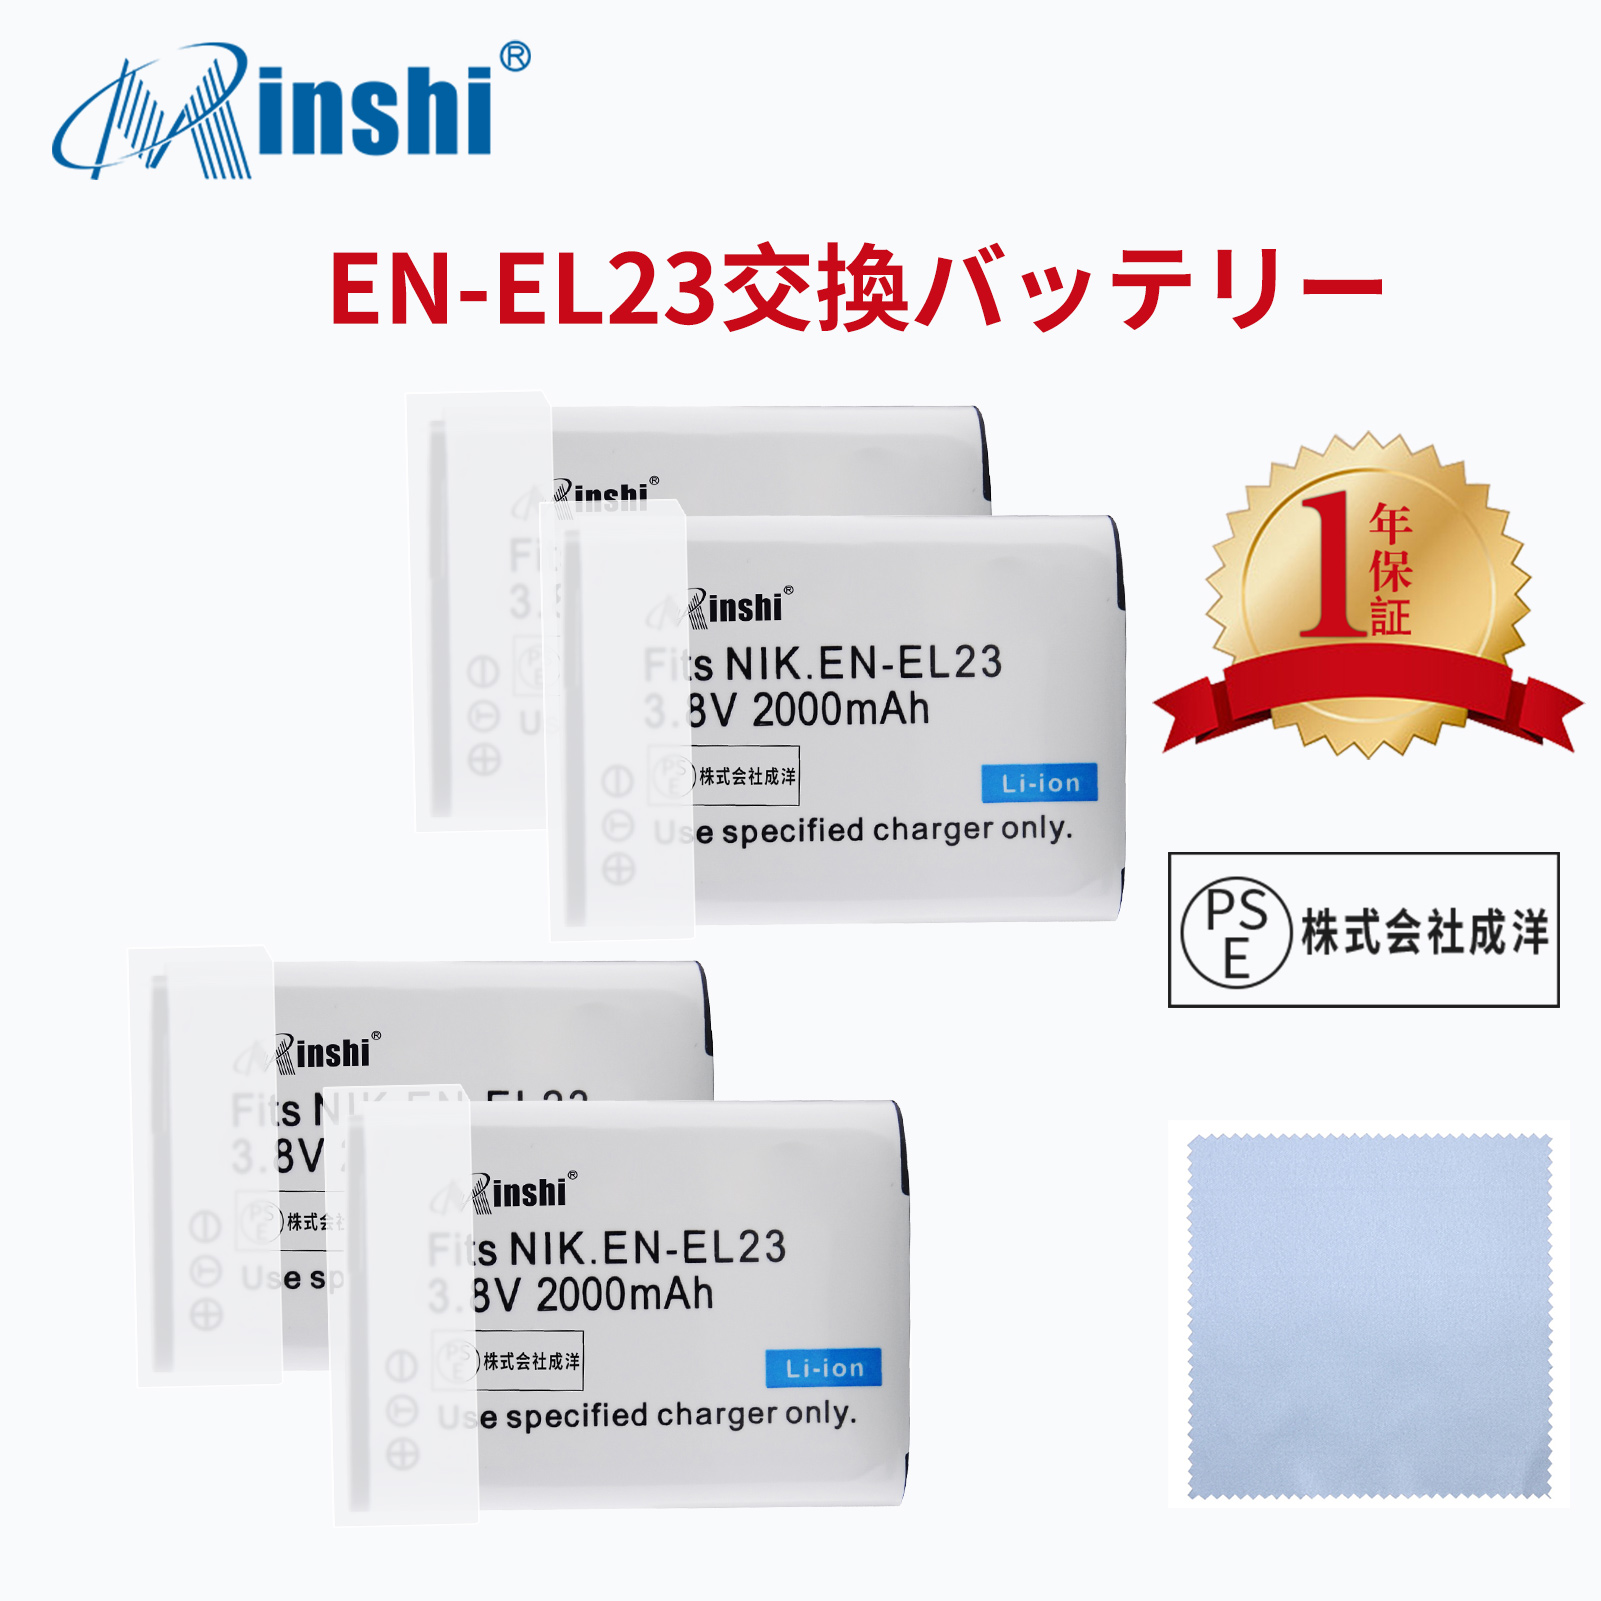 【4個セット&清潔布ー付】 minshi NIKON  P900s B700 対応 互換バッテリー 2000mAh PSE認定済 高品質 EN-EL23 交換用バッテリー